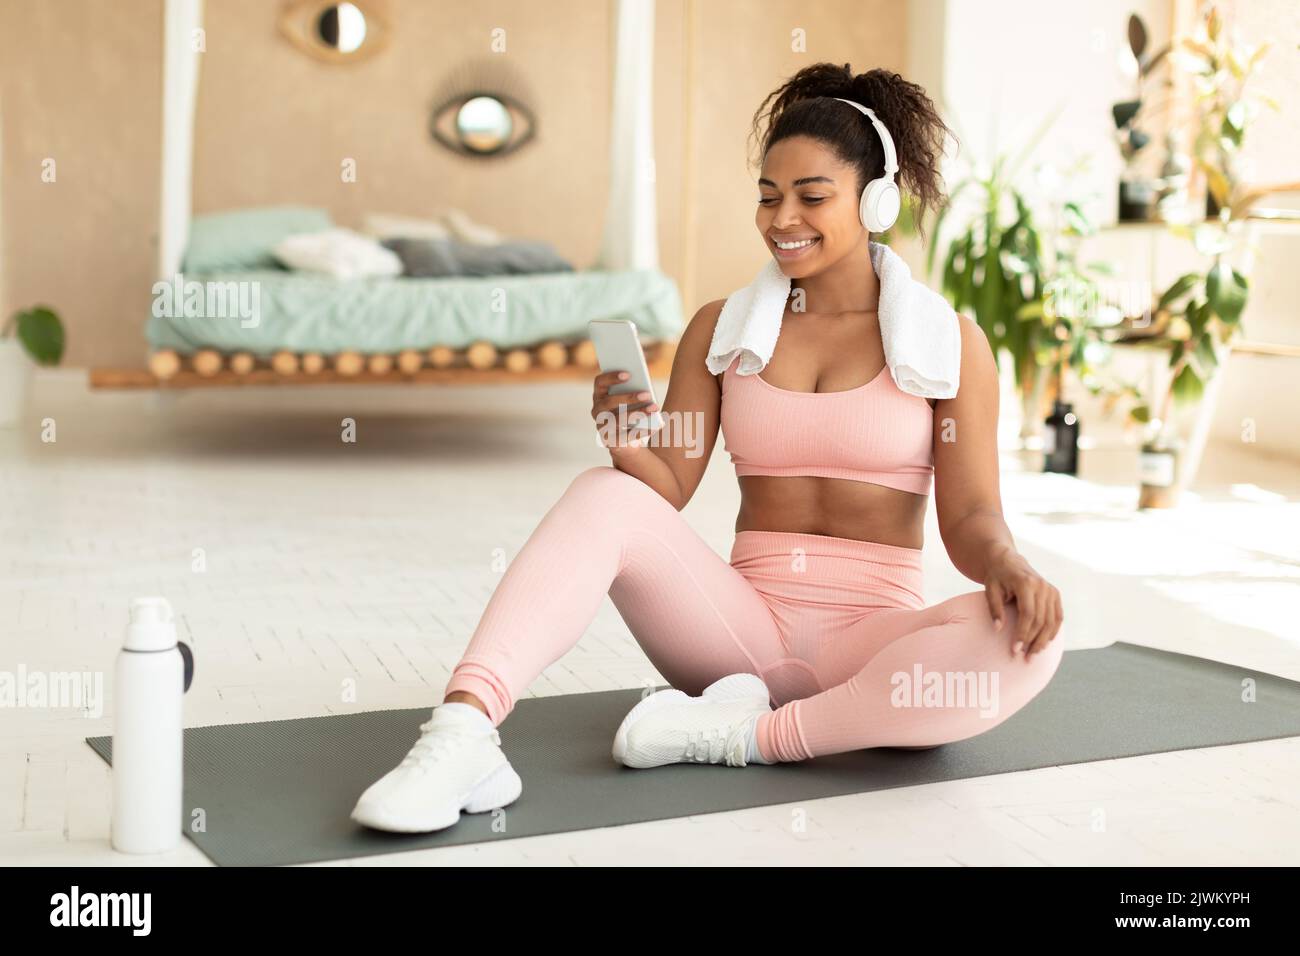 Femme noire à la coupe positive avec une serviette sur les épaules et un casque sans fil assis sur un tapis de fitness et écoutant de la musique Banque D'Images